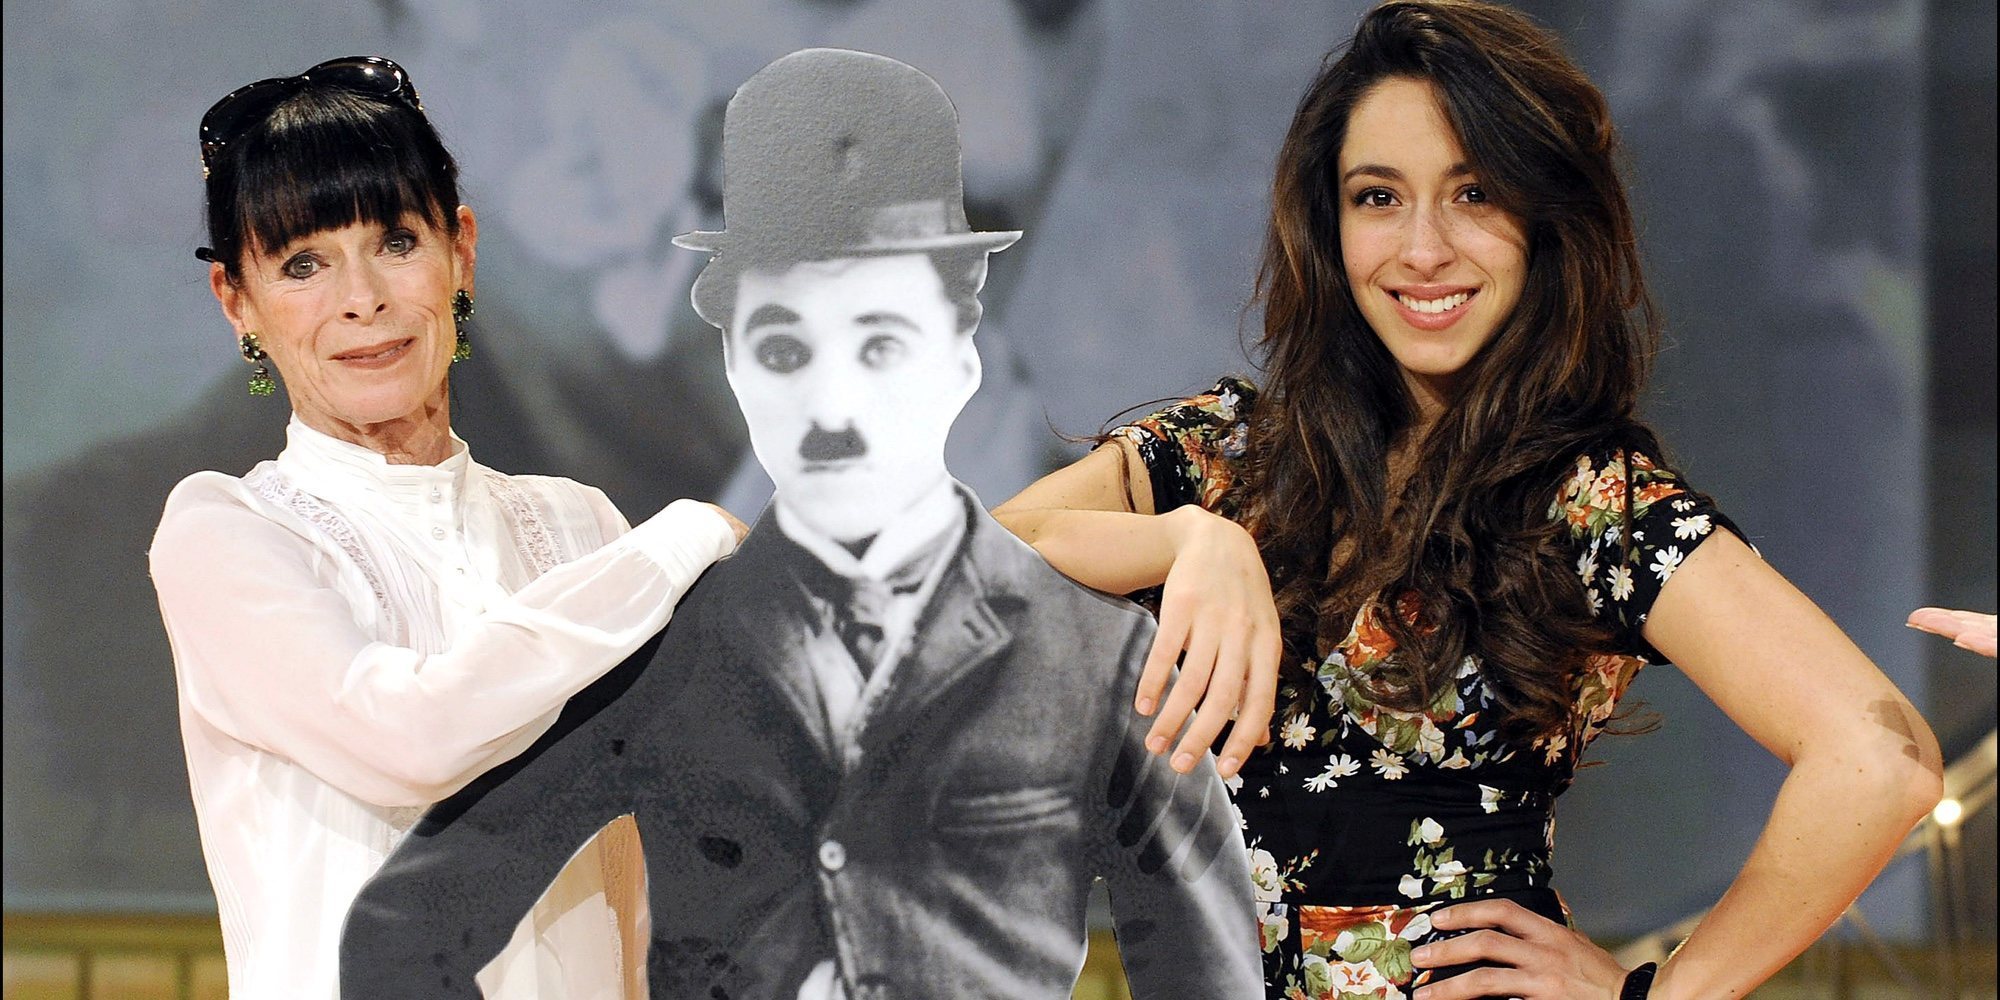 Charles Chaplin, Geraldine y Oona: una saga de artistas unida por la actuación